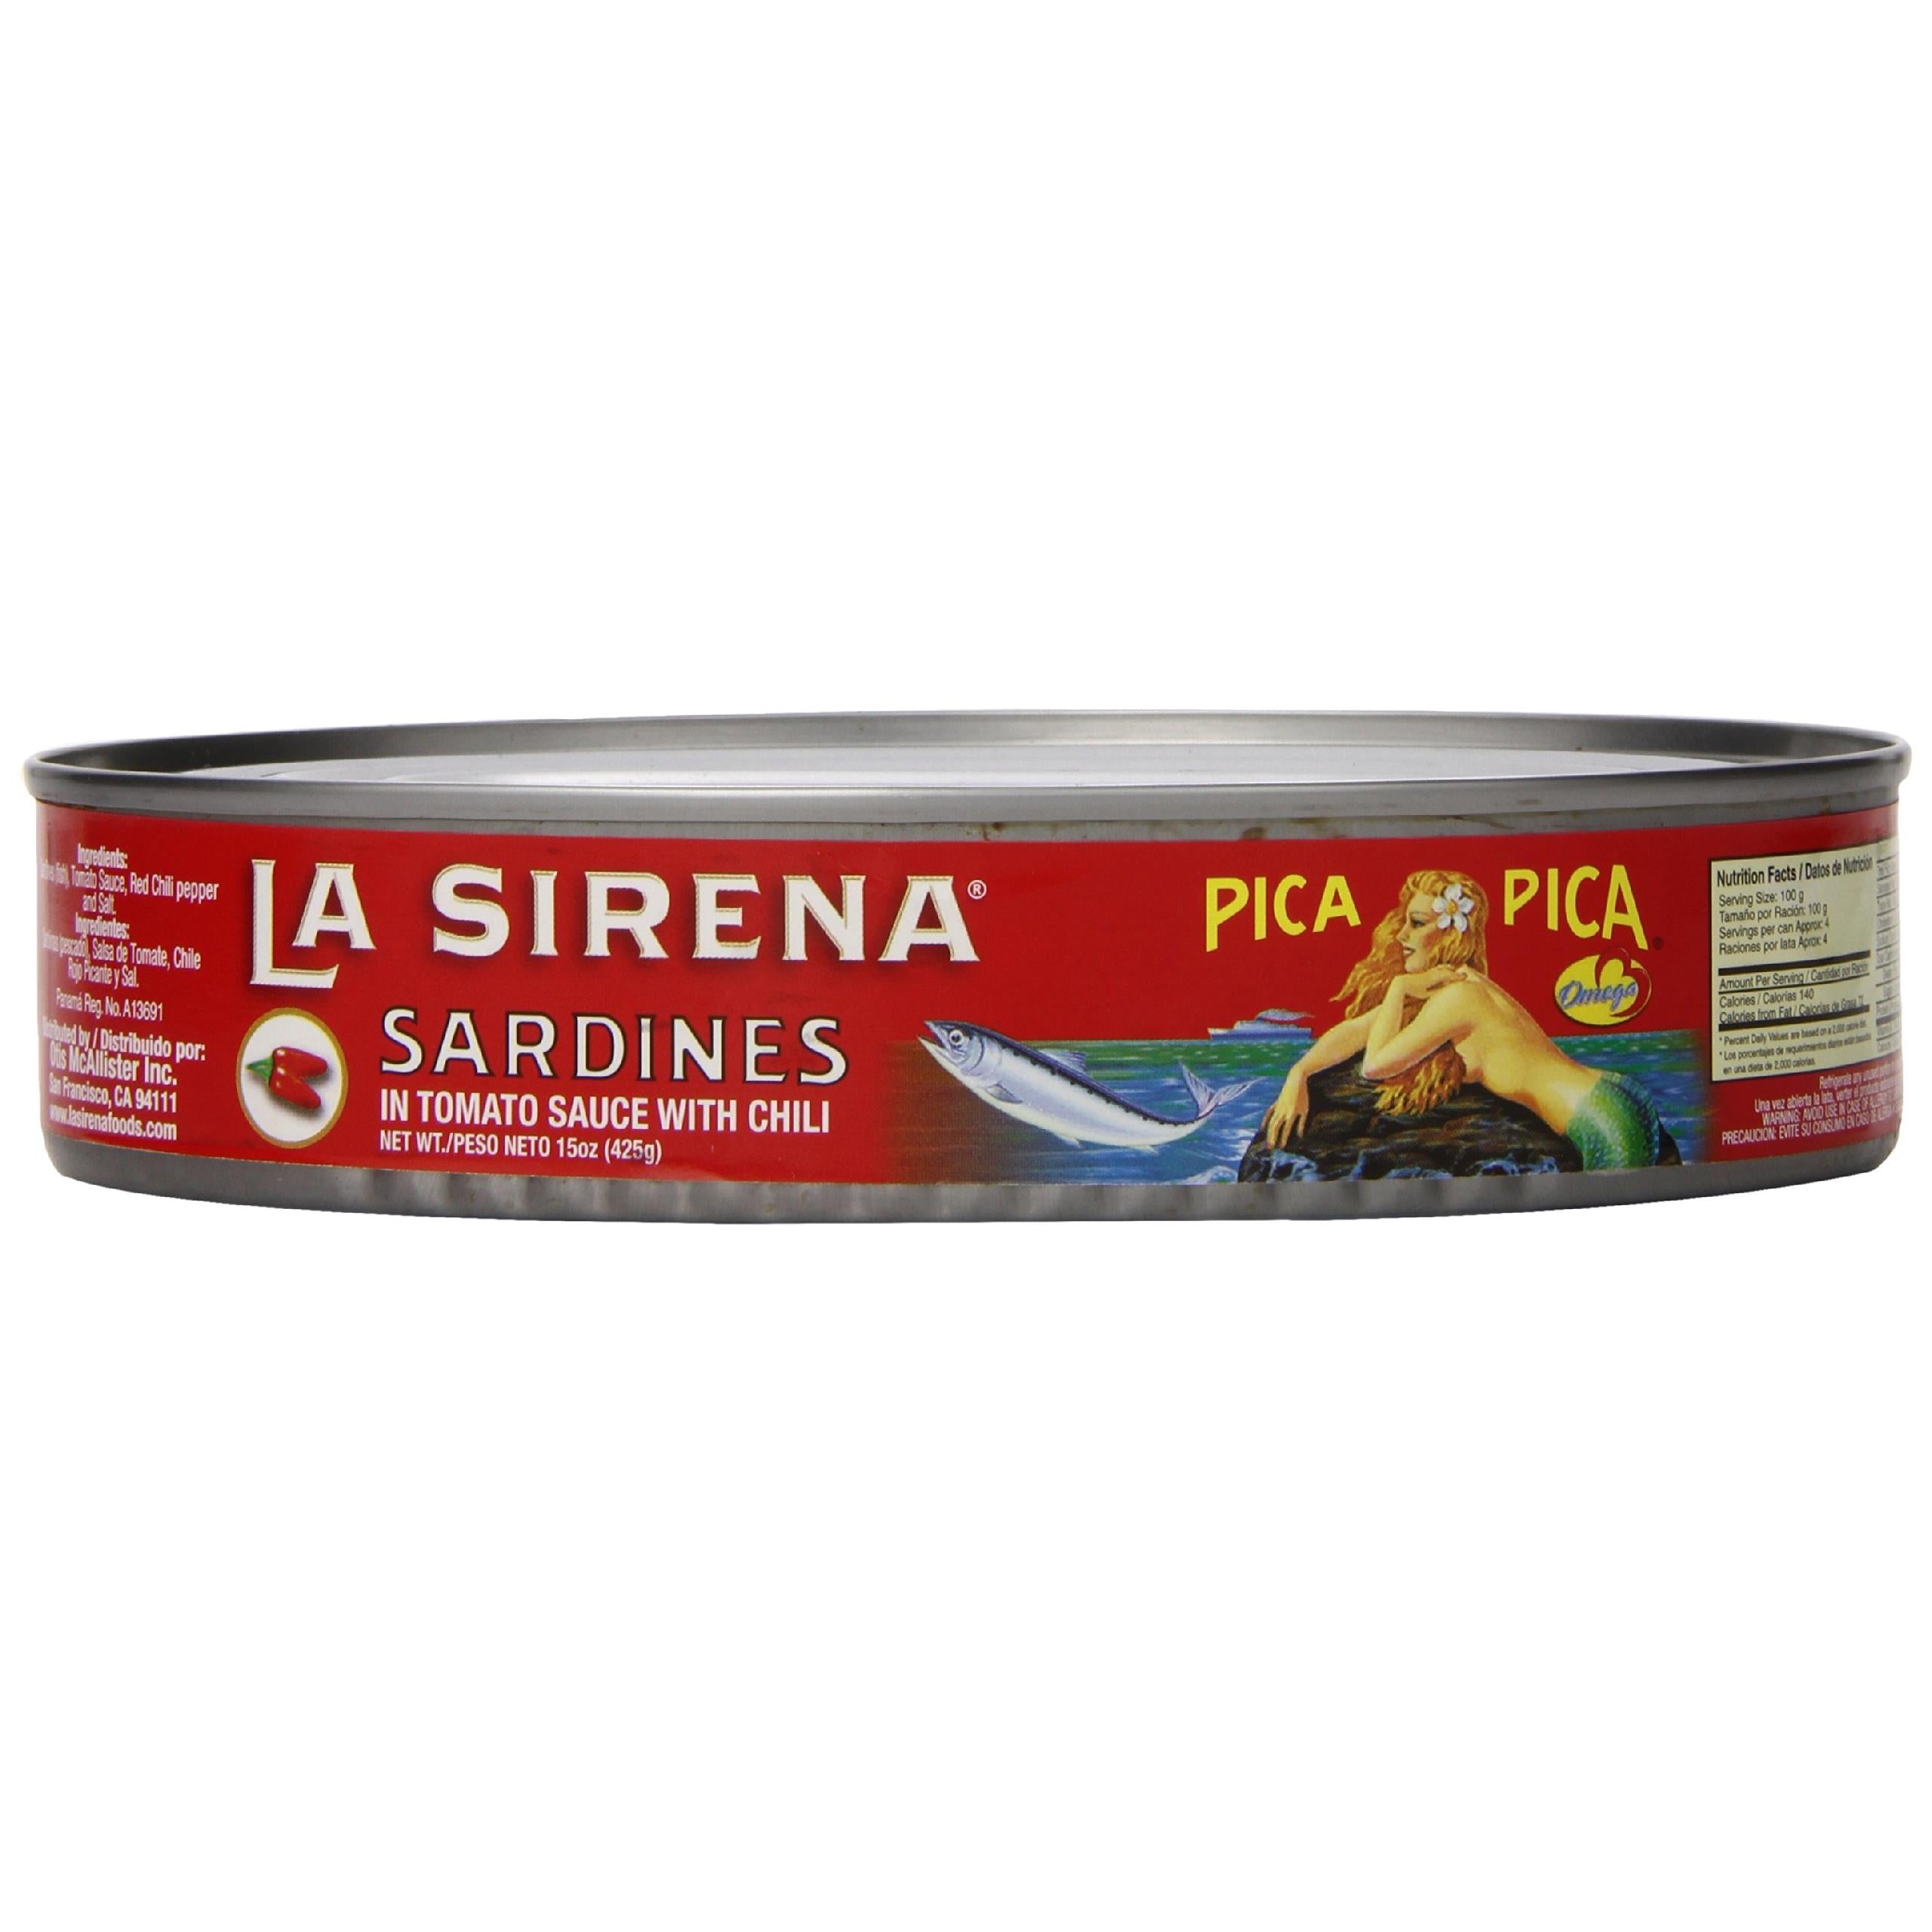 La Sirena Sardines Pica Pica in Oval Can, 15 oz